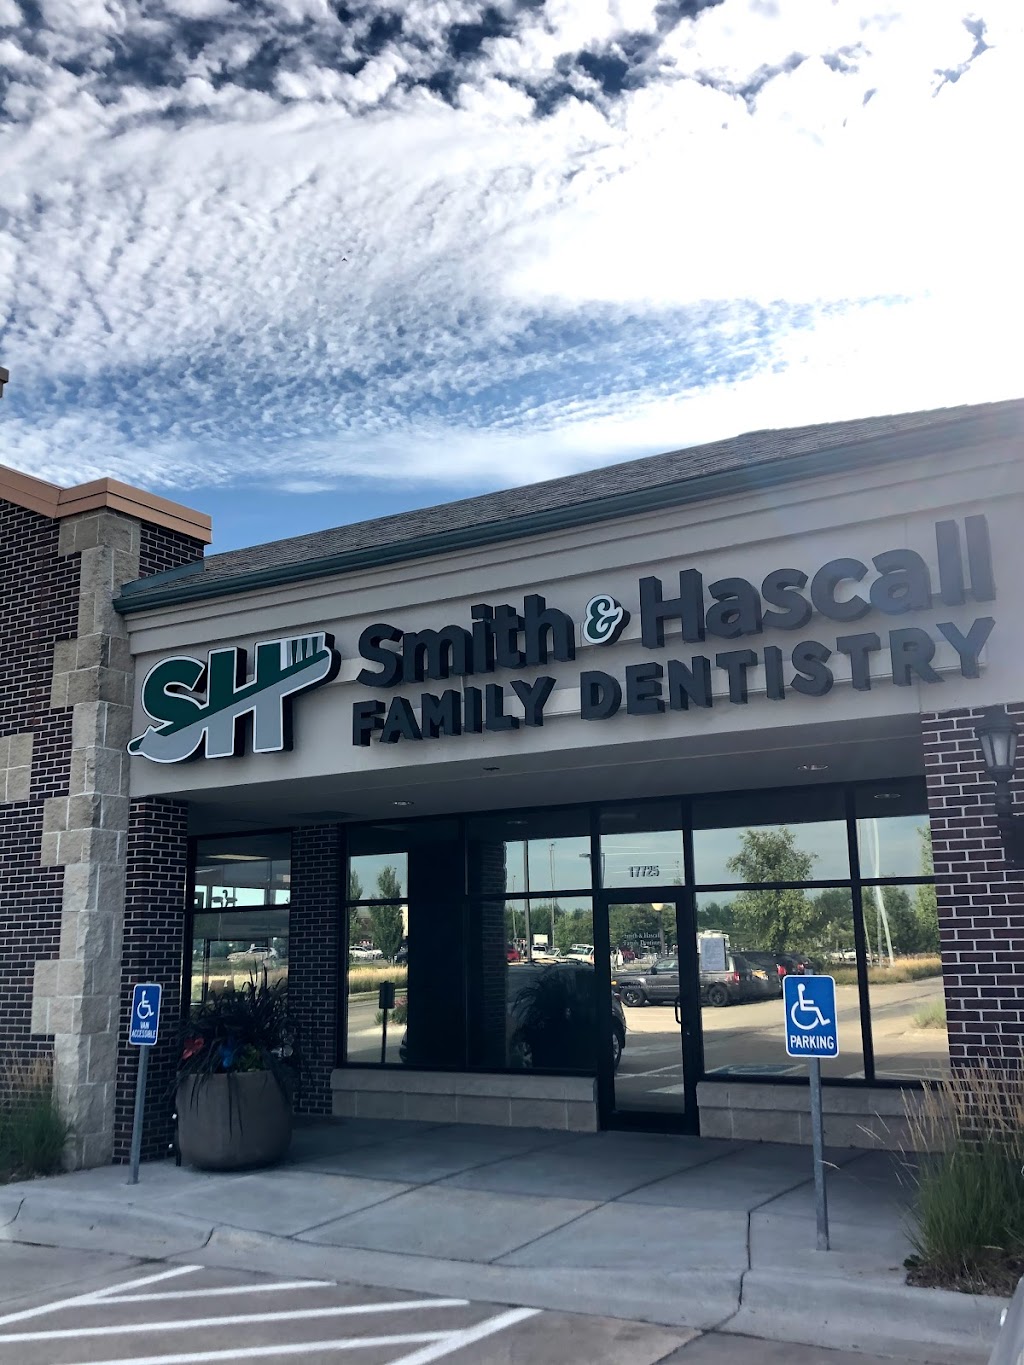 Smith & Hascall Family Dentistry | 17725 Welch Plaza # B, Omaha, NE 68135 | Phone: (402) 932-9349